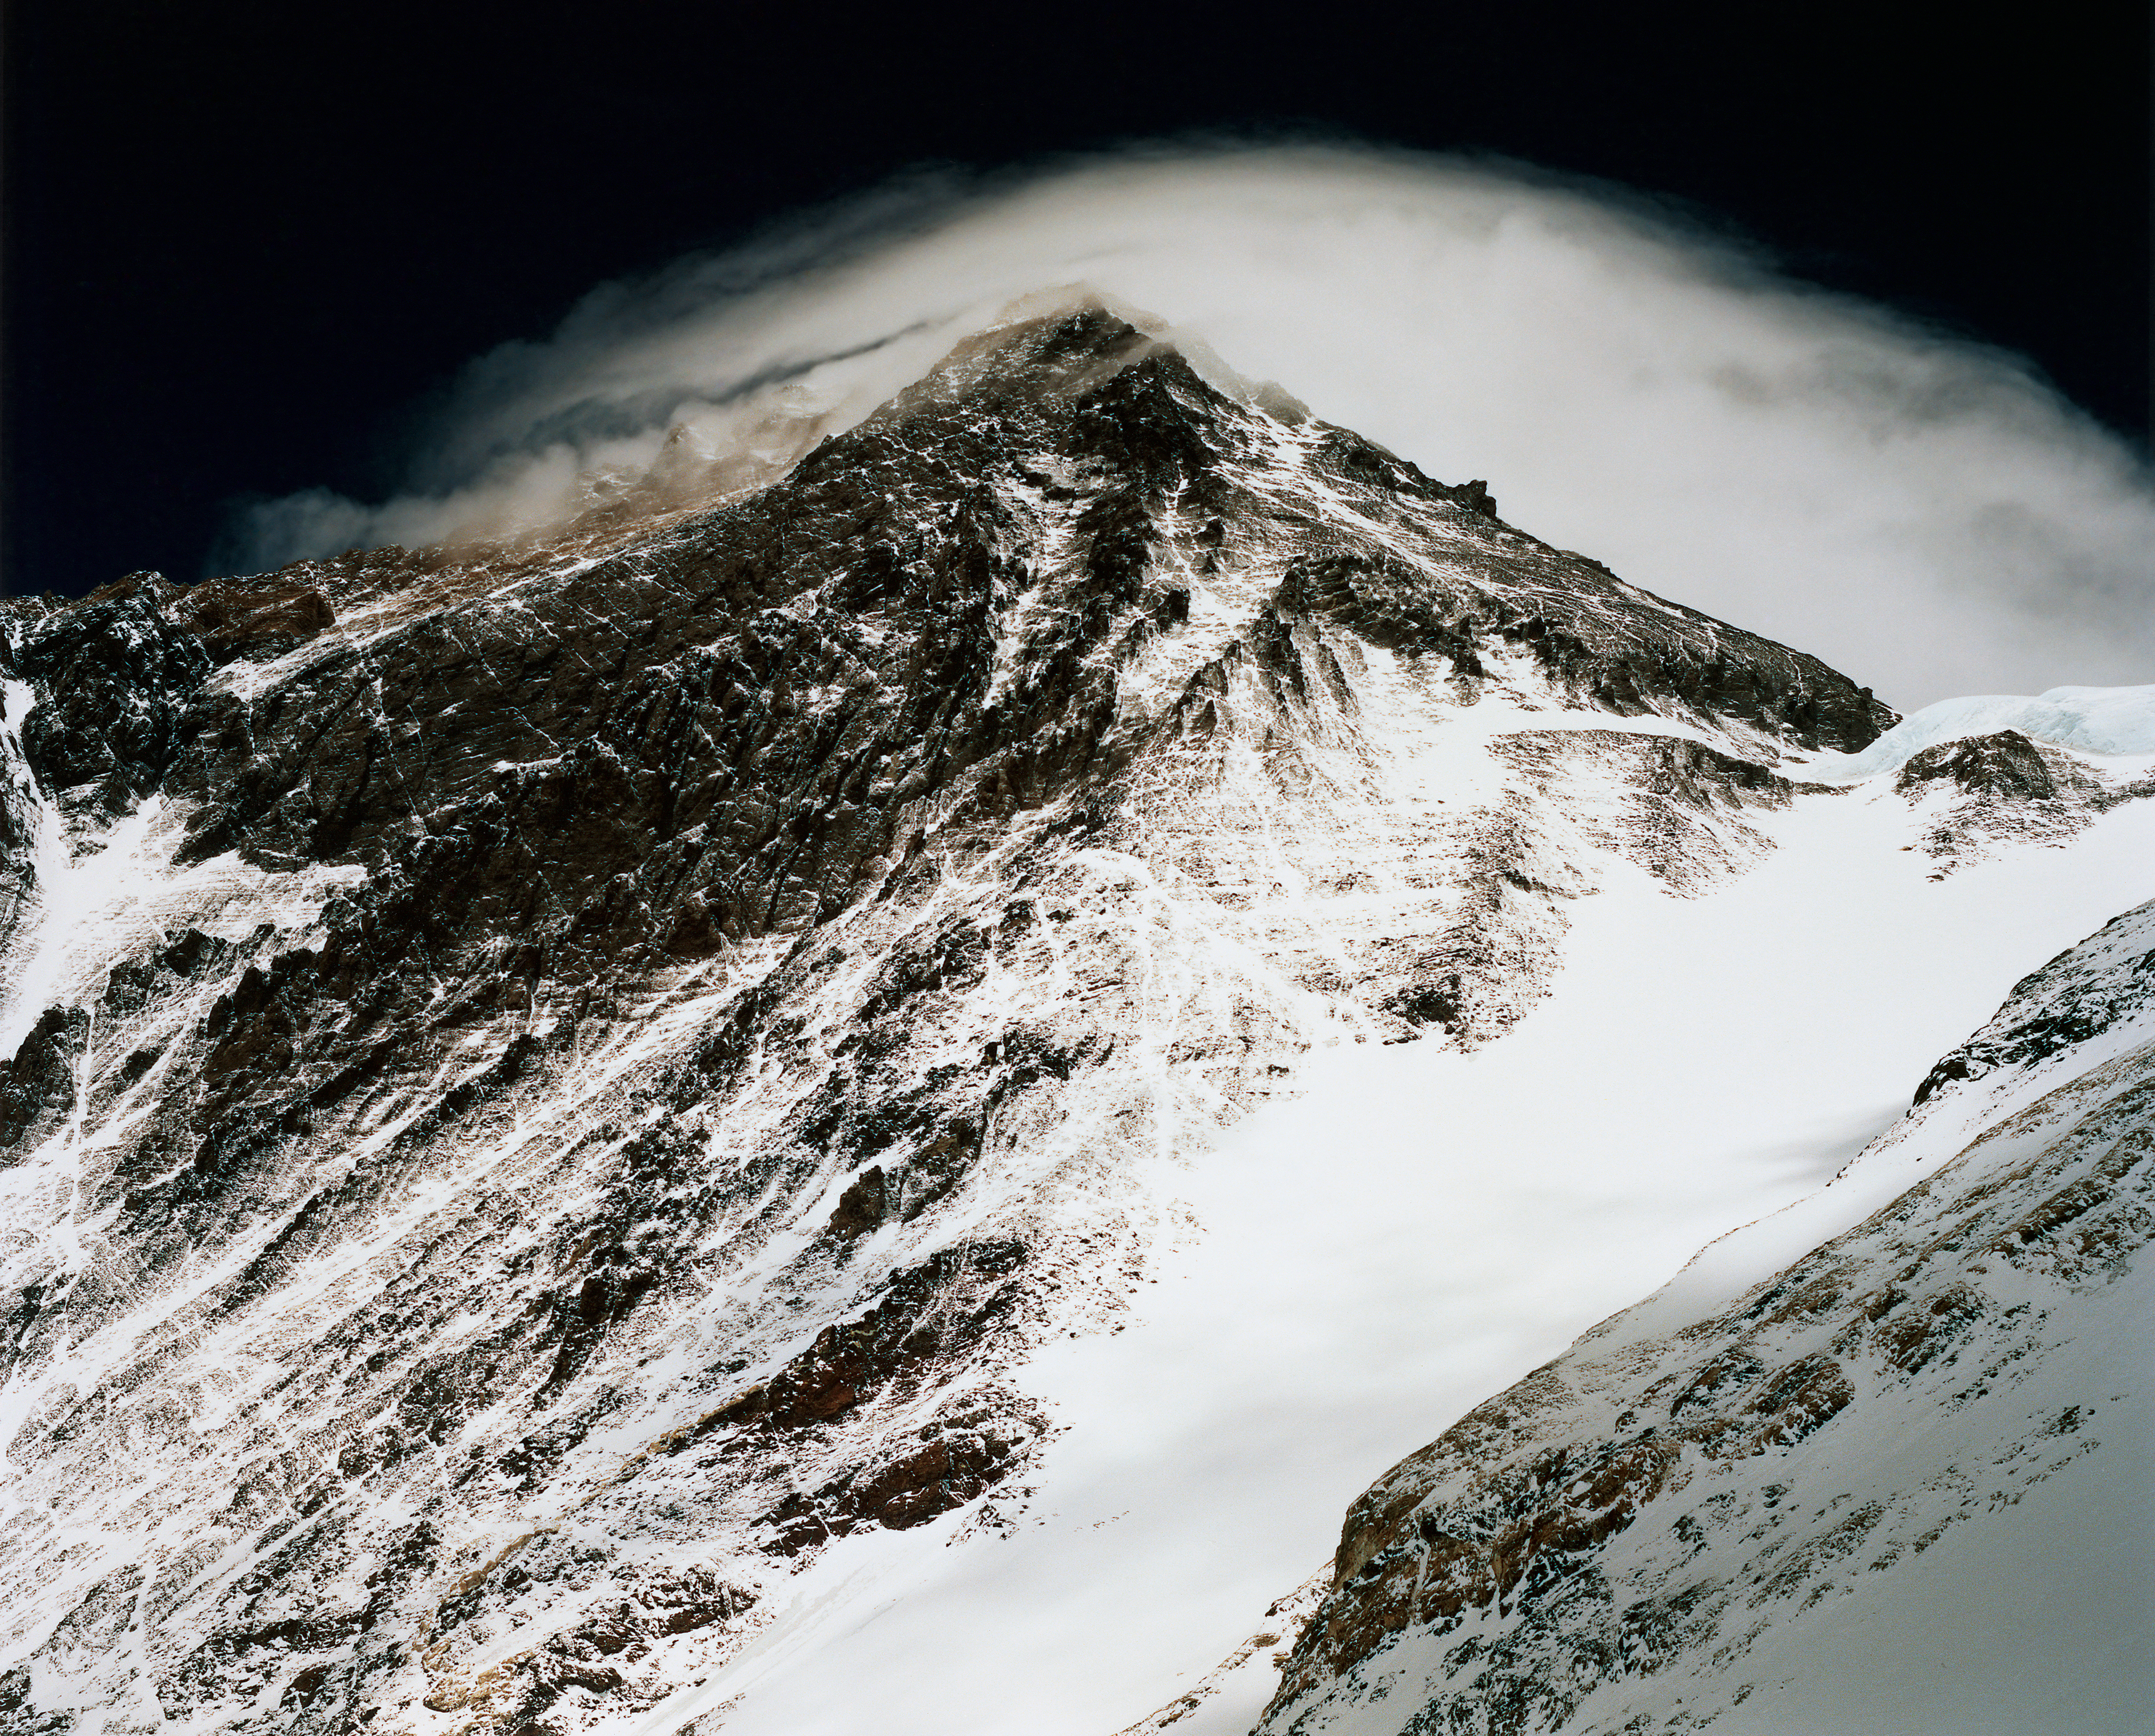 石川直樹 写真集『EVEREST』より。2011年のエヴェレスト遠征を中心に、その後のローツェ、マカルー遠征などでも見つめることになった世界最高峰の写真を加えて構成された自身の「EVEREST」写真の集大成。© Naoki ISHIKAWA 